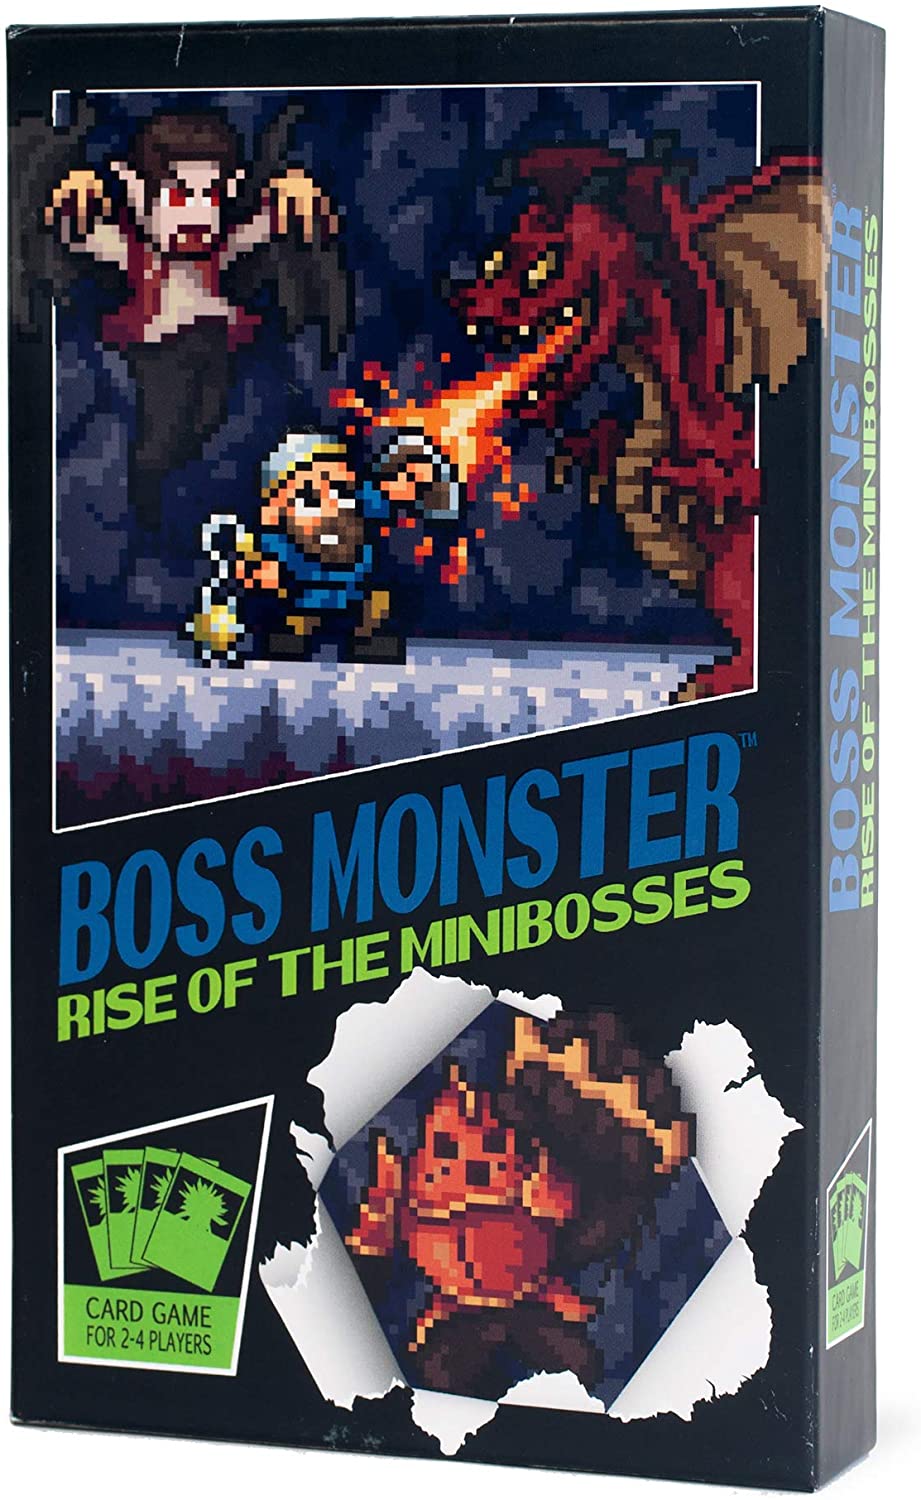 Boss monster- rise of the mini bosses